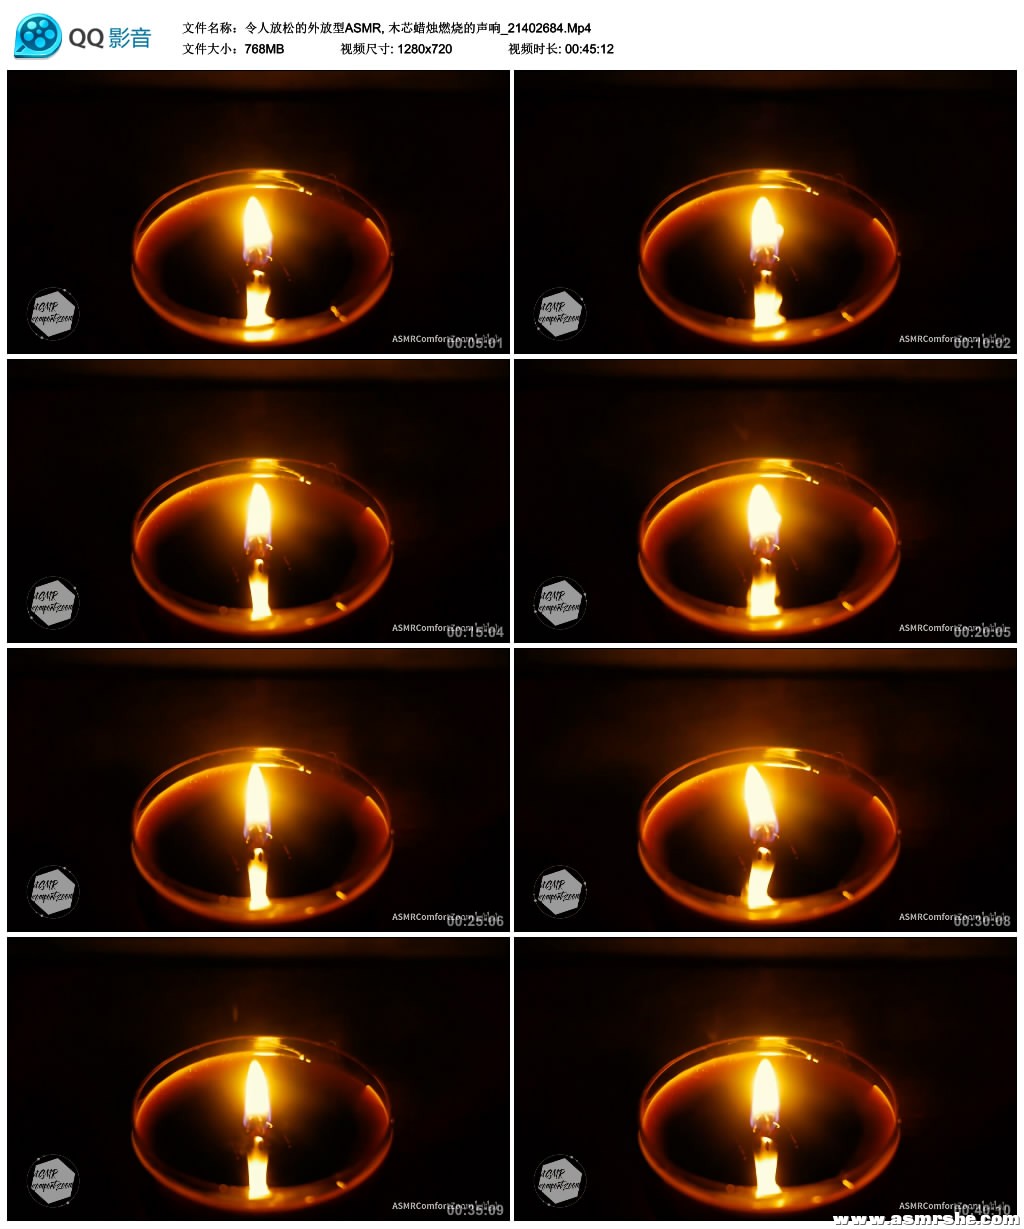 令人放松的外放型ASMR, 木芯蜡烛燃烧的声音 助眠减压ASMR插图(1)